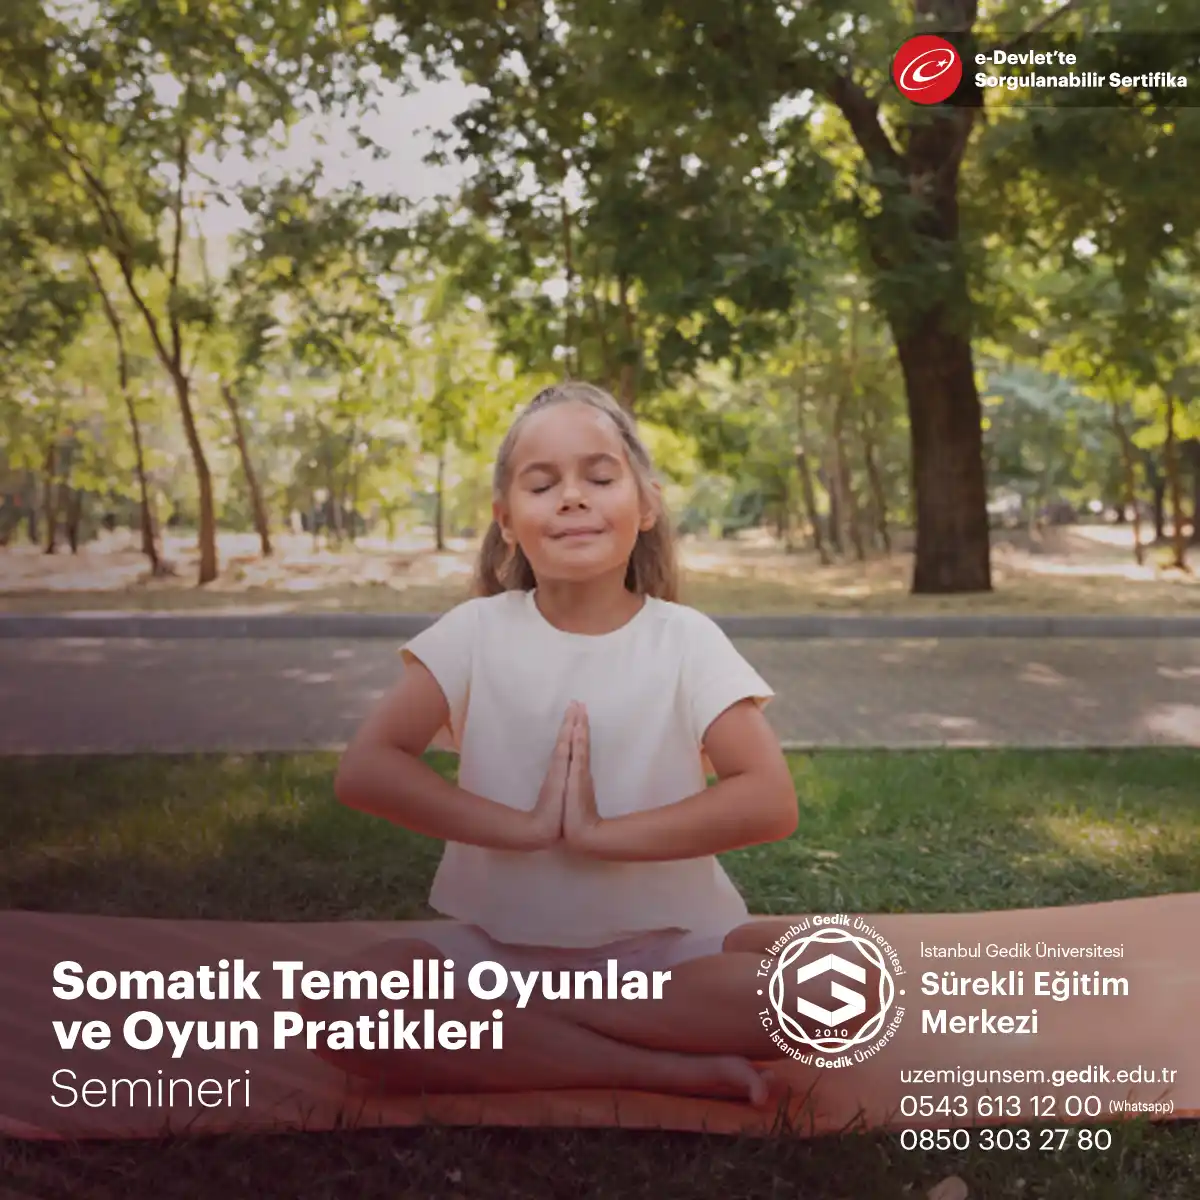 Somatik Temelli Oyunlar ve Oyun Pratikleri Semineri, bedensel farkındalık ve ifadeyi artırmak için tasarlanmış bir eğitim programıdır.